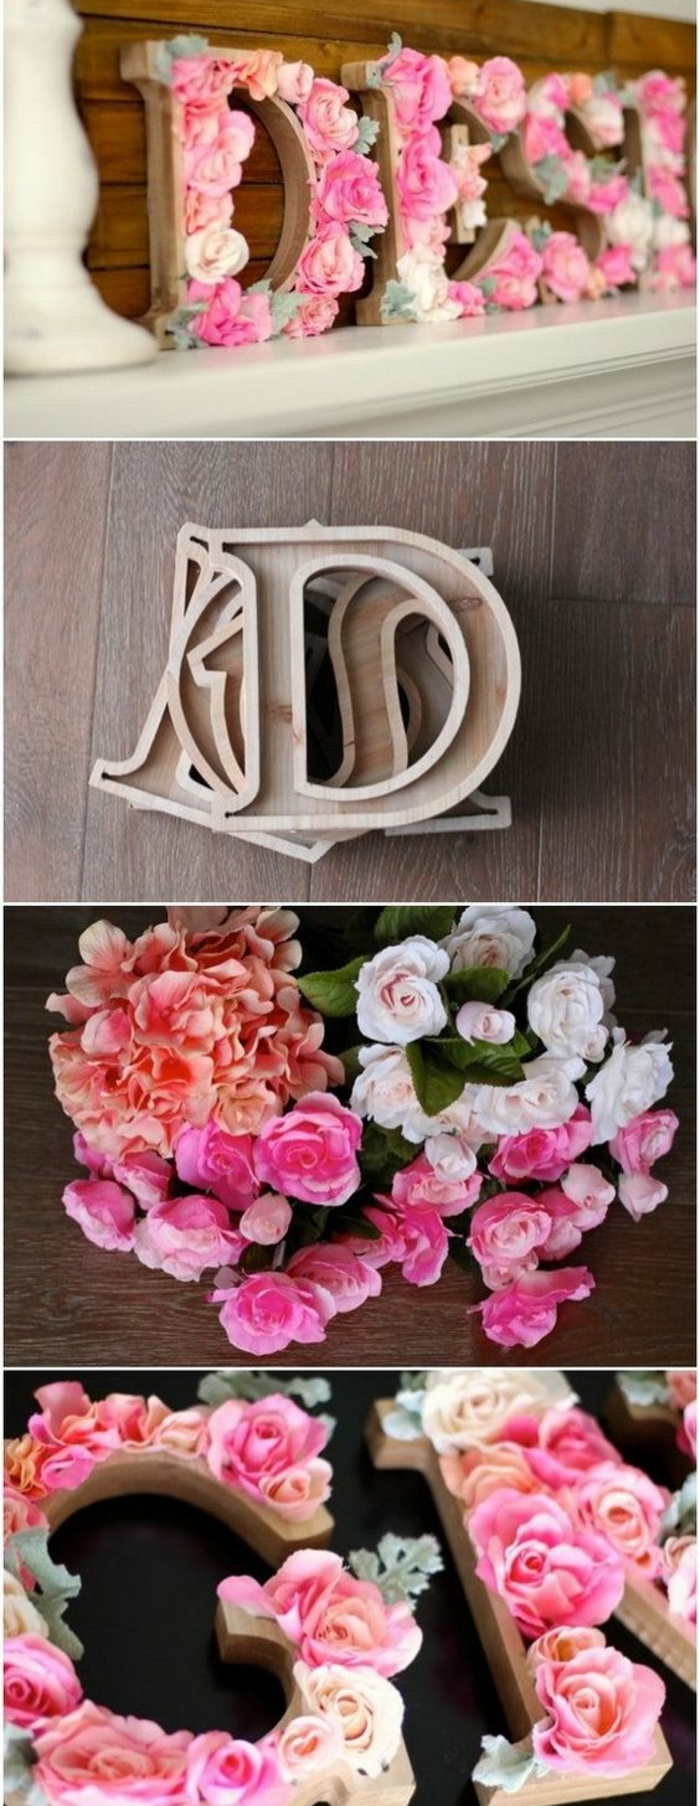 DIY déco chambre, lettre en bois décorée de fleurs rose, idée comment personnaliser la déco dans sa chambre, roses